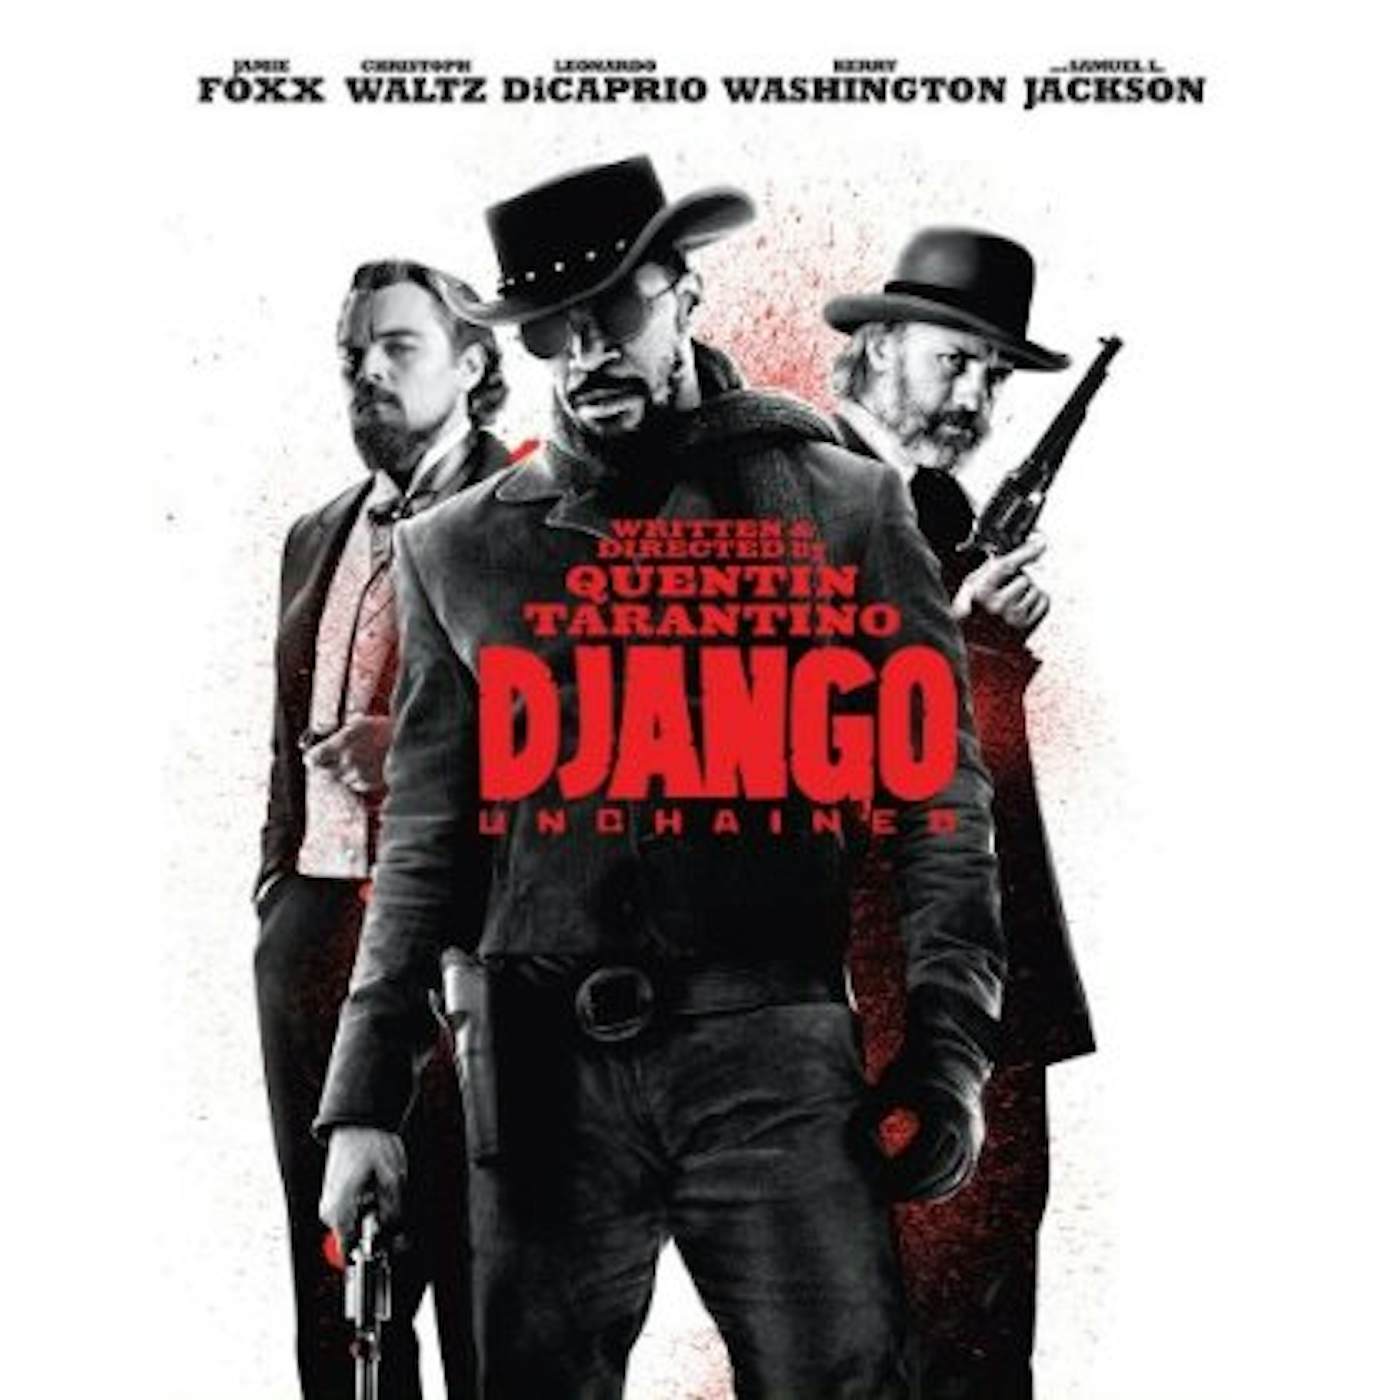 DJANGO UNCHAINED Blu-ray